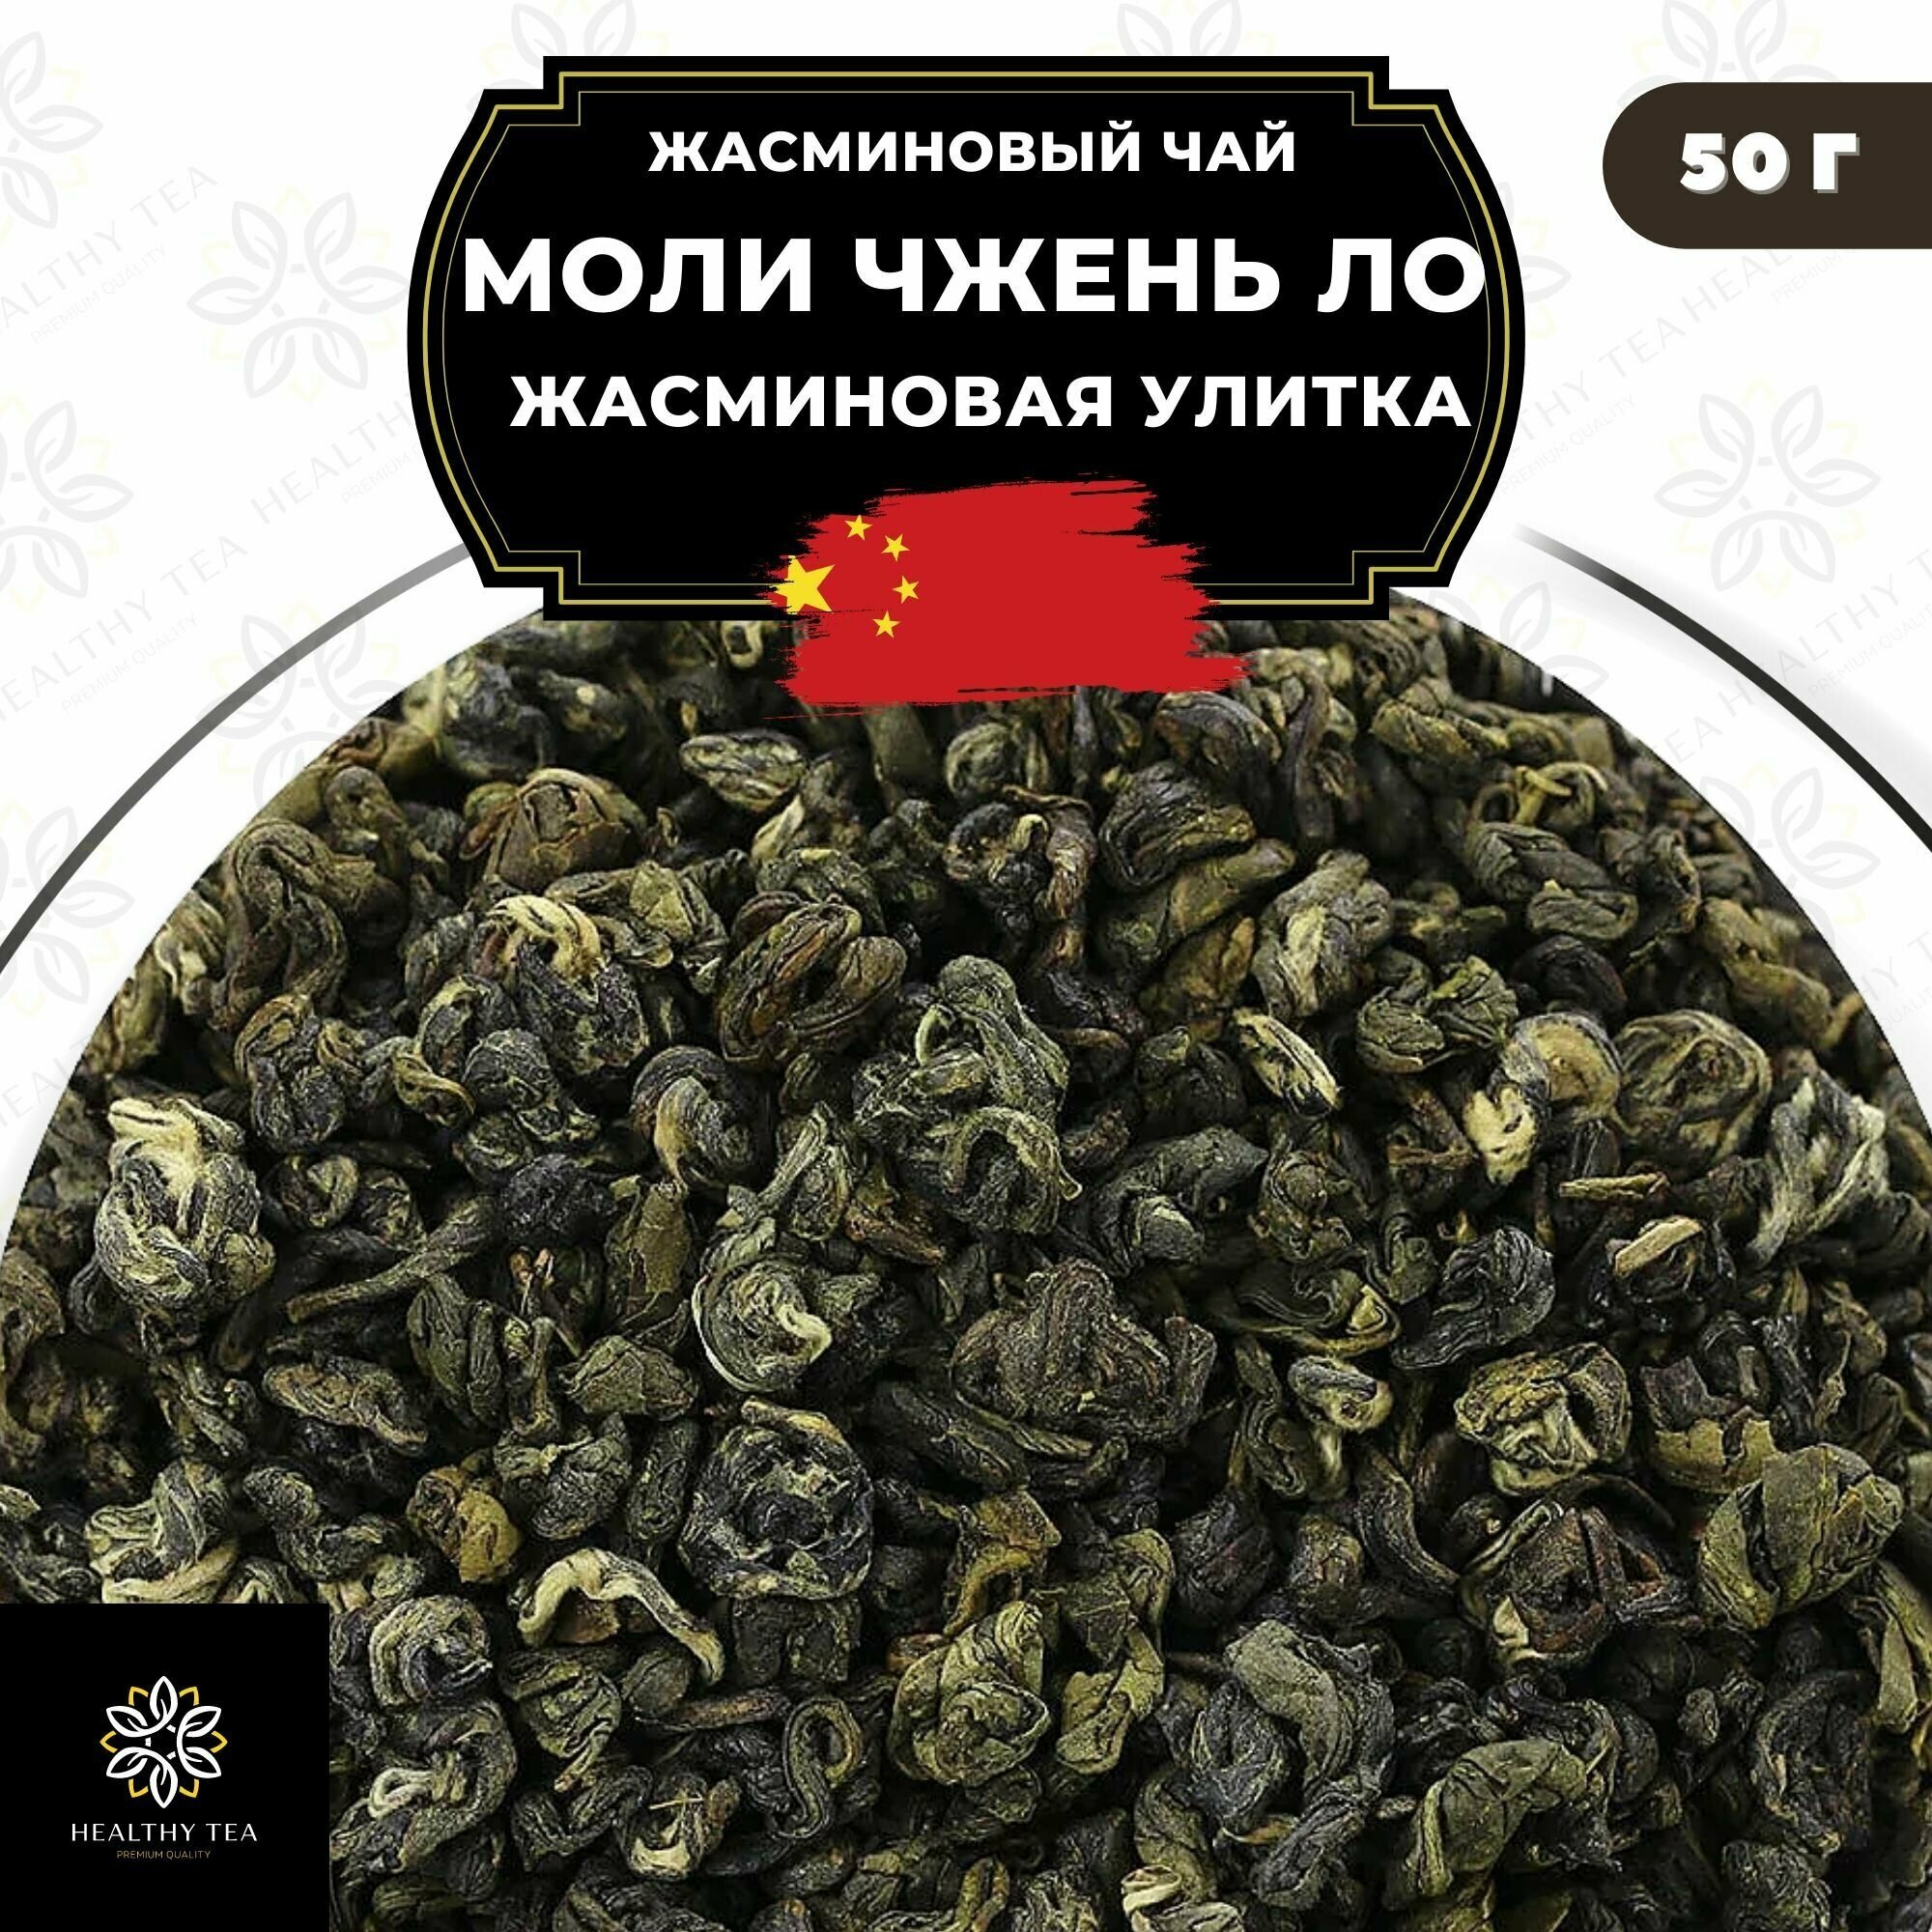 Китайский жасминовый чай Моли Чжень Ло (Жасминовая улитка) Полезный чай / HEALTHY TEA, 50 г